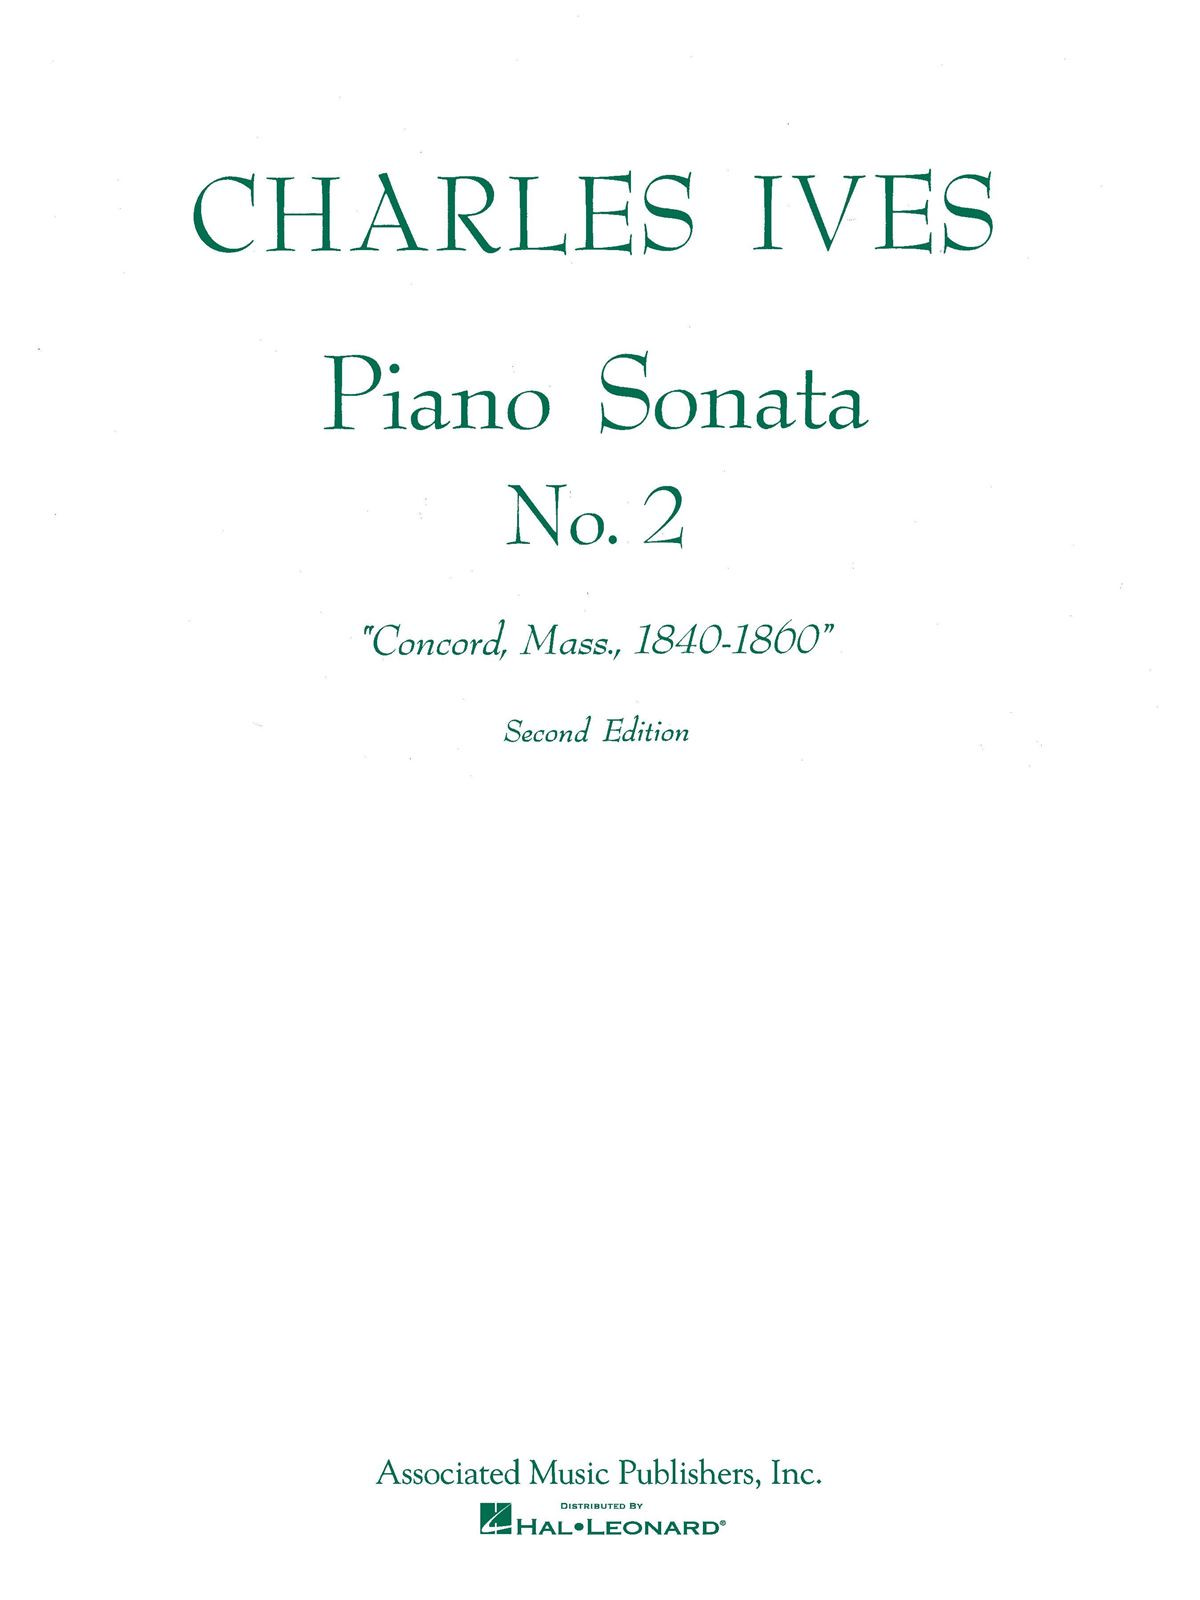 Piano Sonata No. 2 (2nd Ed.) "Concord, Mass 1840-60"